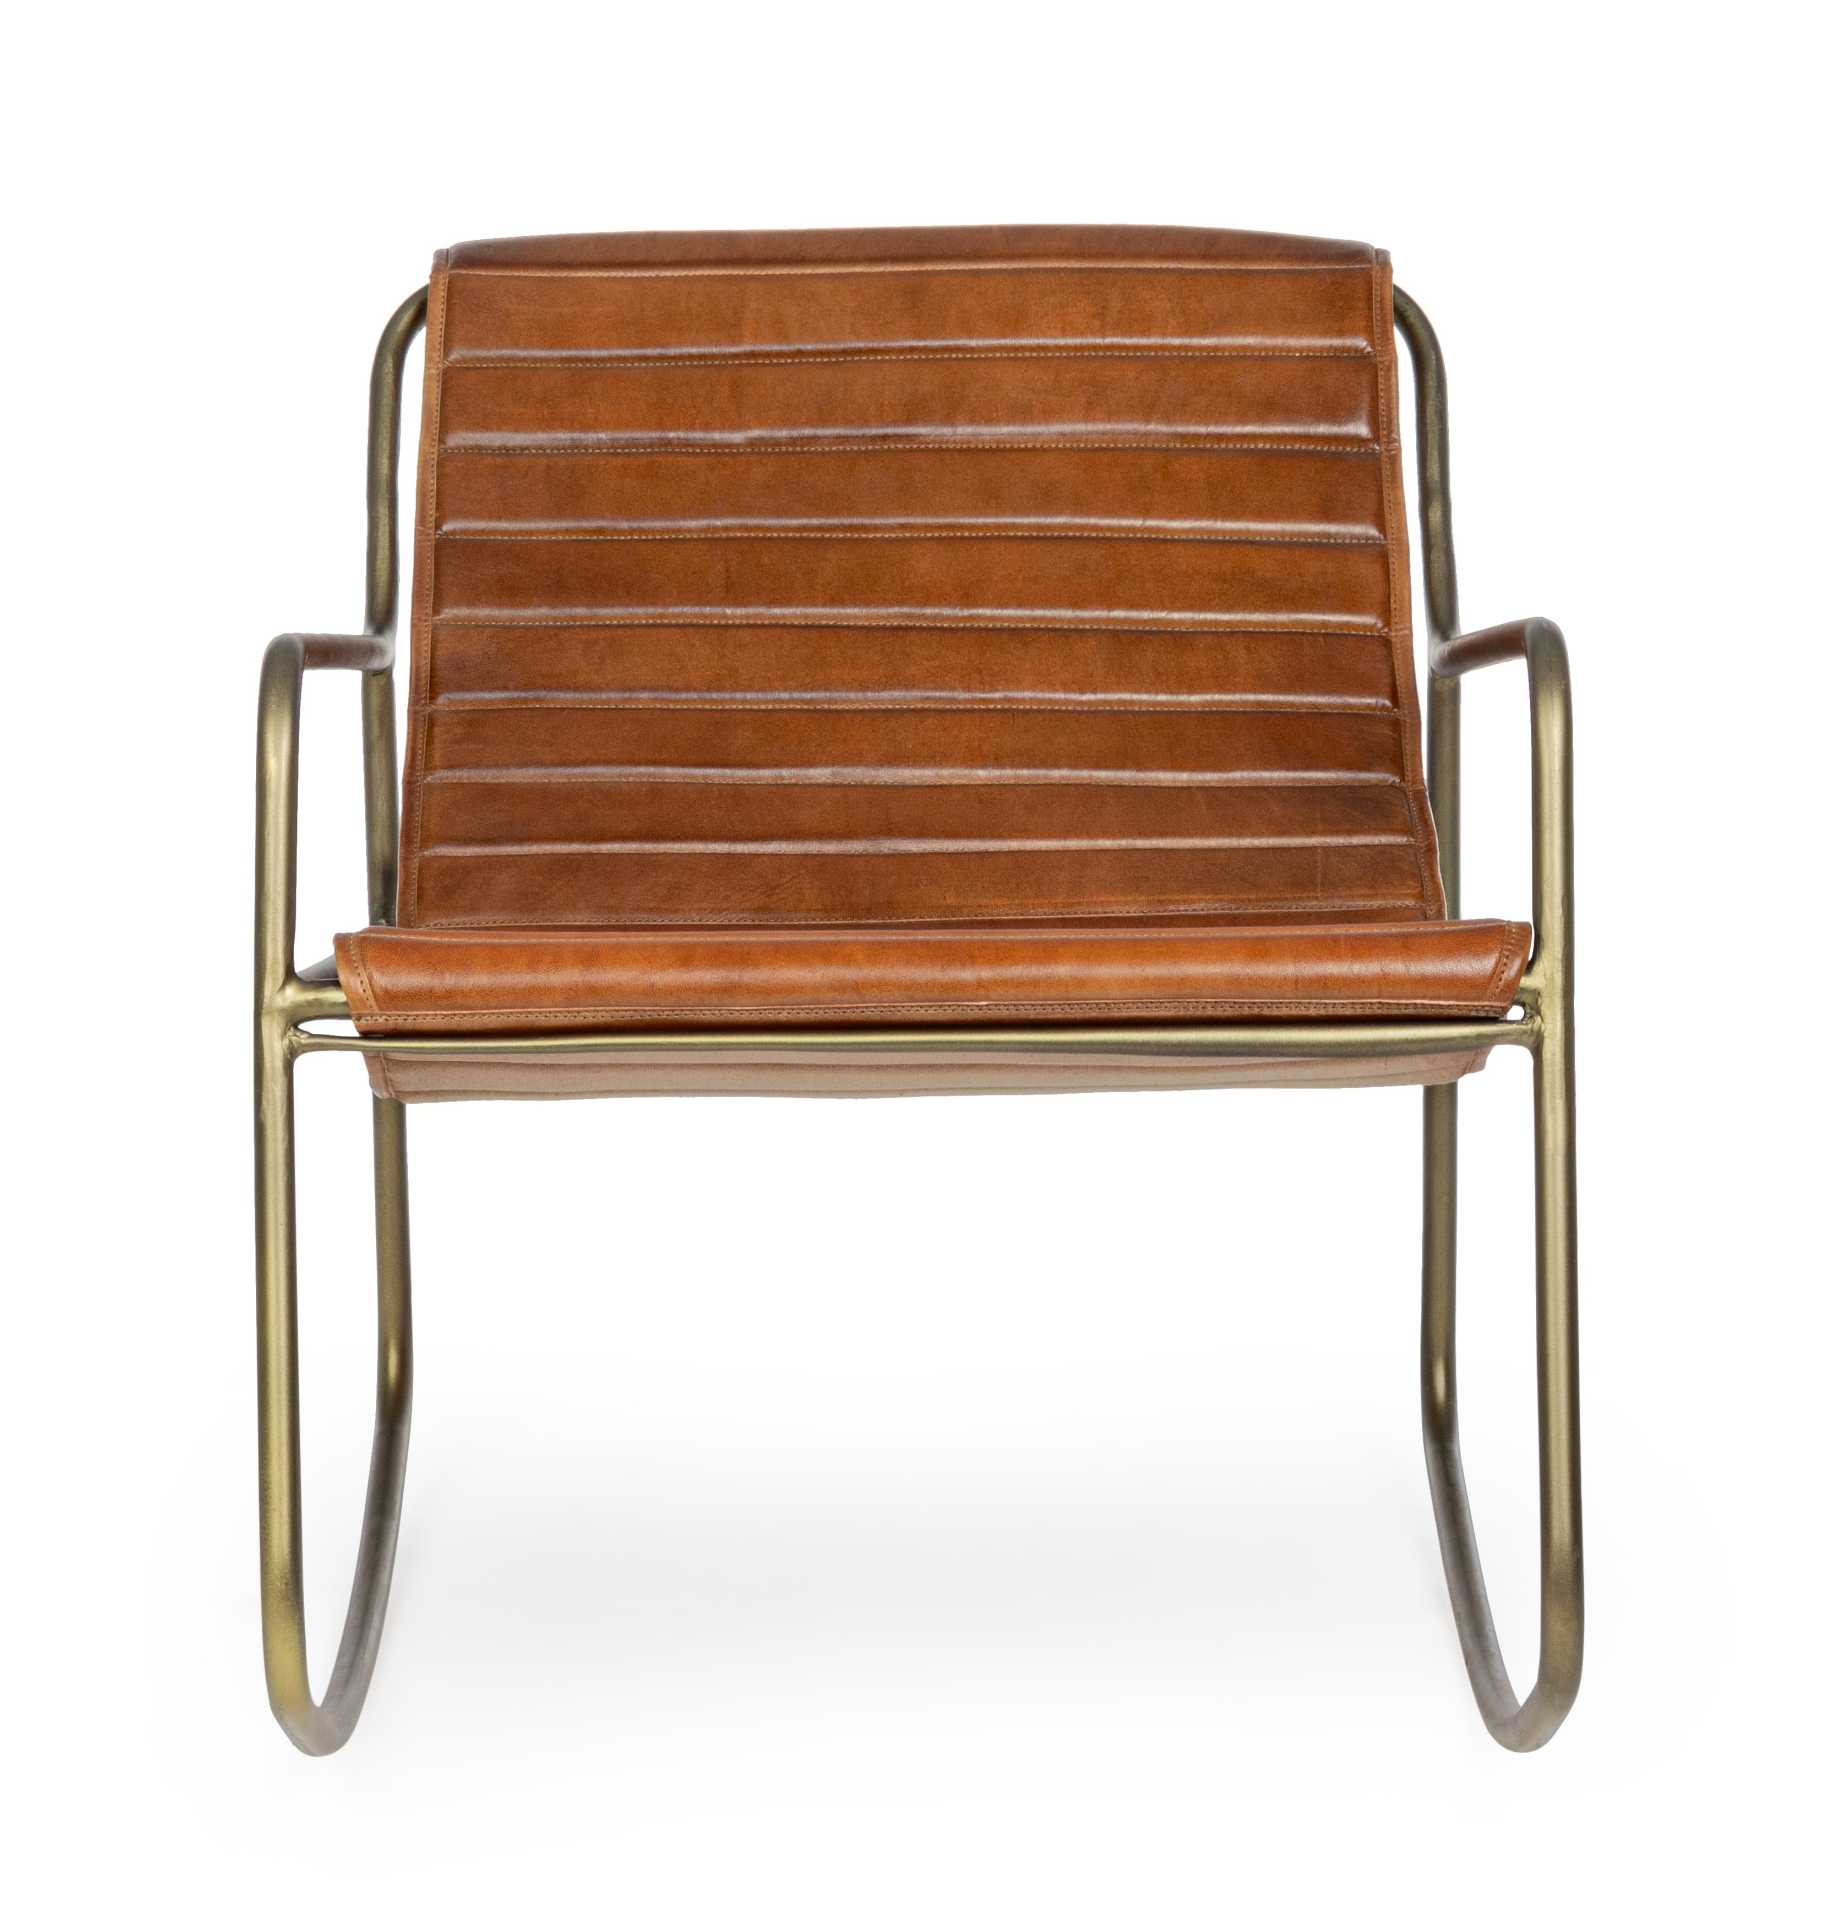 Der Sessel Karisma überzeugt mit seinem klassischen Design. Gefertigt wurde er aus Leder, welches einen Cognac Farbton besitzt. Das Gestell ist aus Metall und hat eine goldene Farbe. Der Sessel besitzt eine Sitzhöhe von 44 cm. Die Breite beträgt 59 cm.